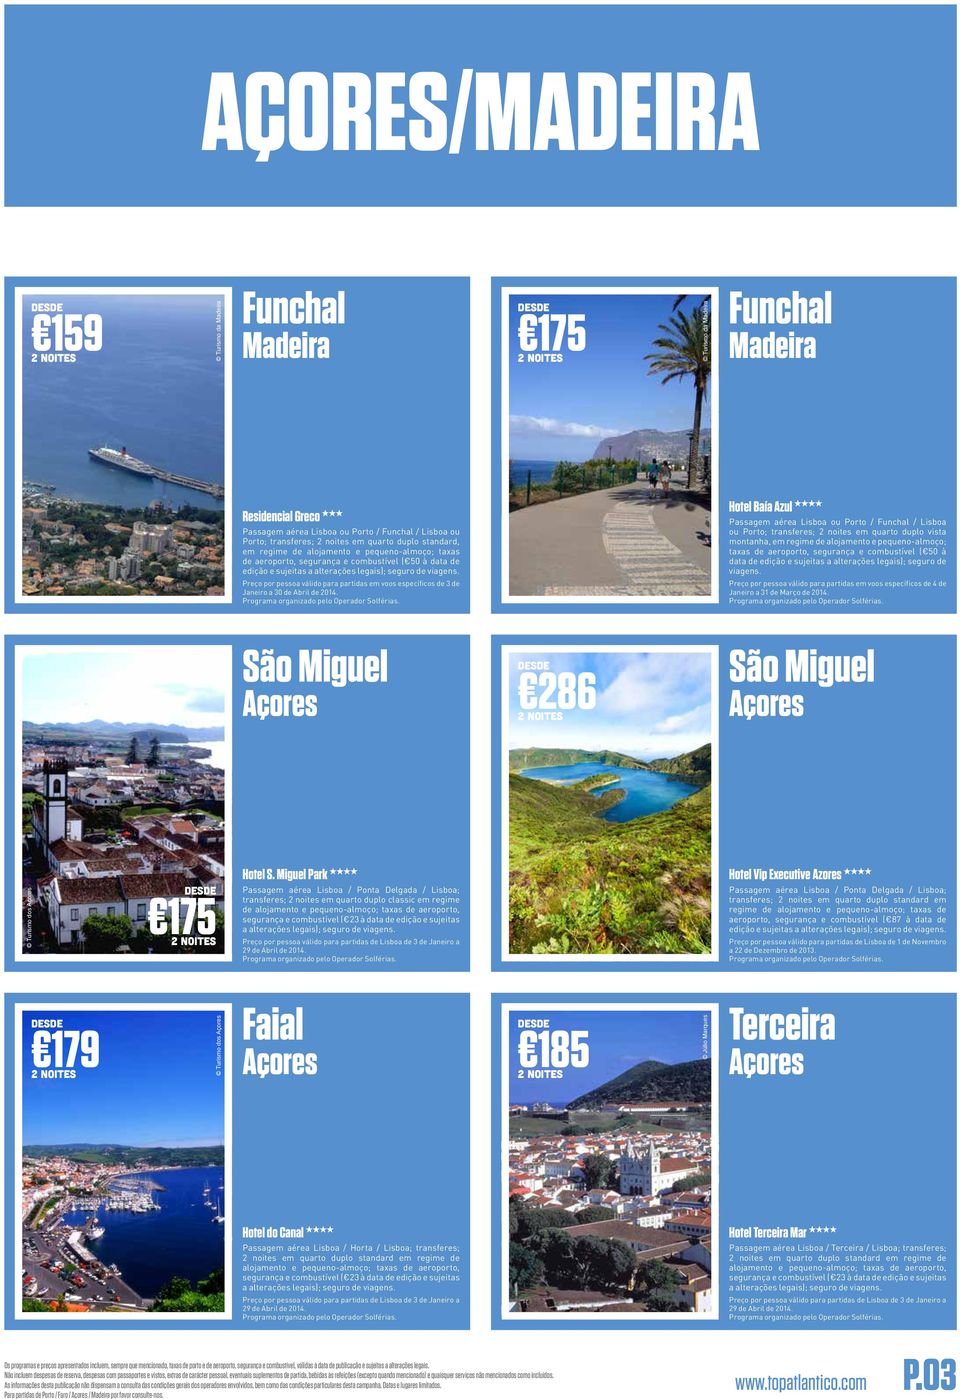 Preço por pessoa válido para partidas em voos específicos de 3 de Janeiro a 30 de Abril de 2014. São Miguel Açores Hotel S.